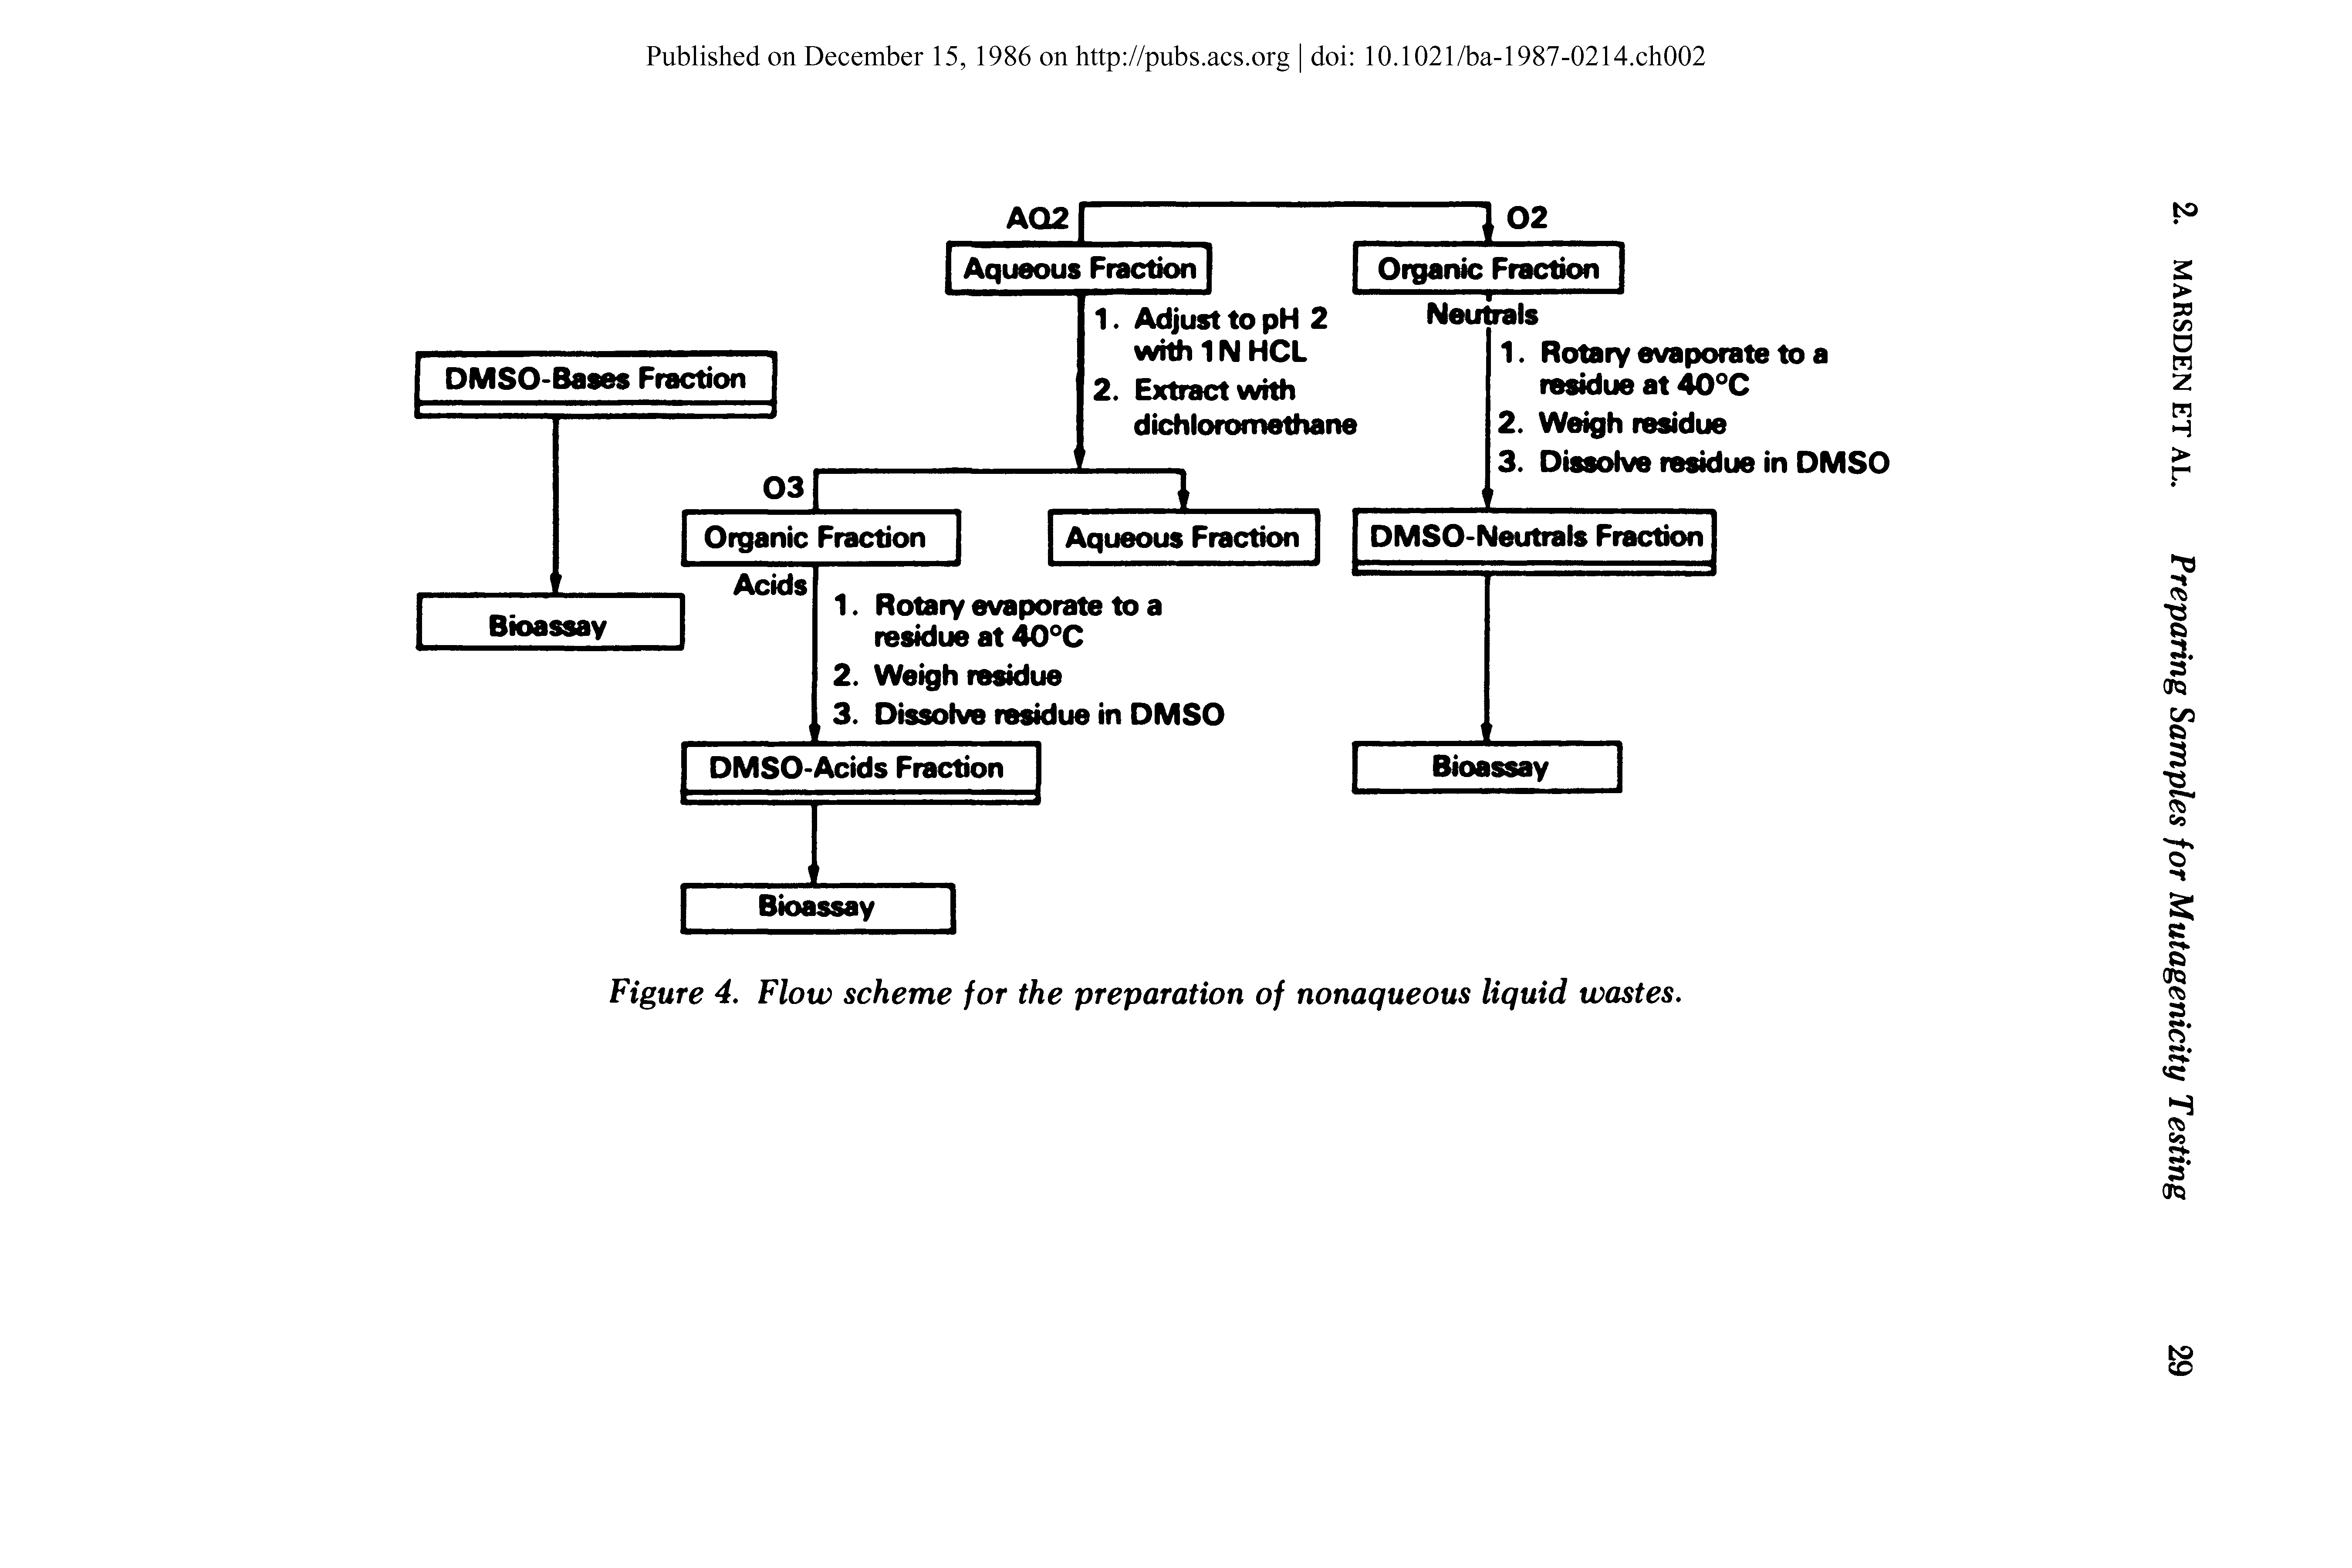 Figure 4. Flow scheme for the preparation of nonaqueous liquid wastes.